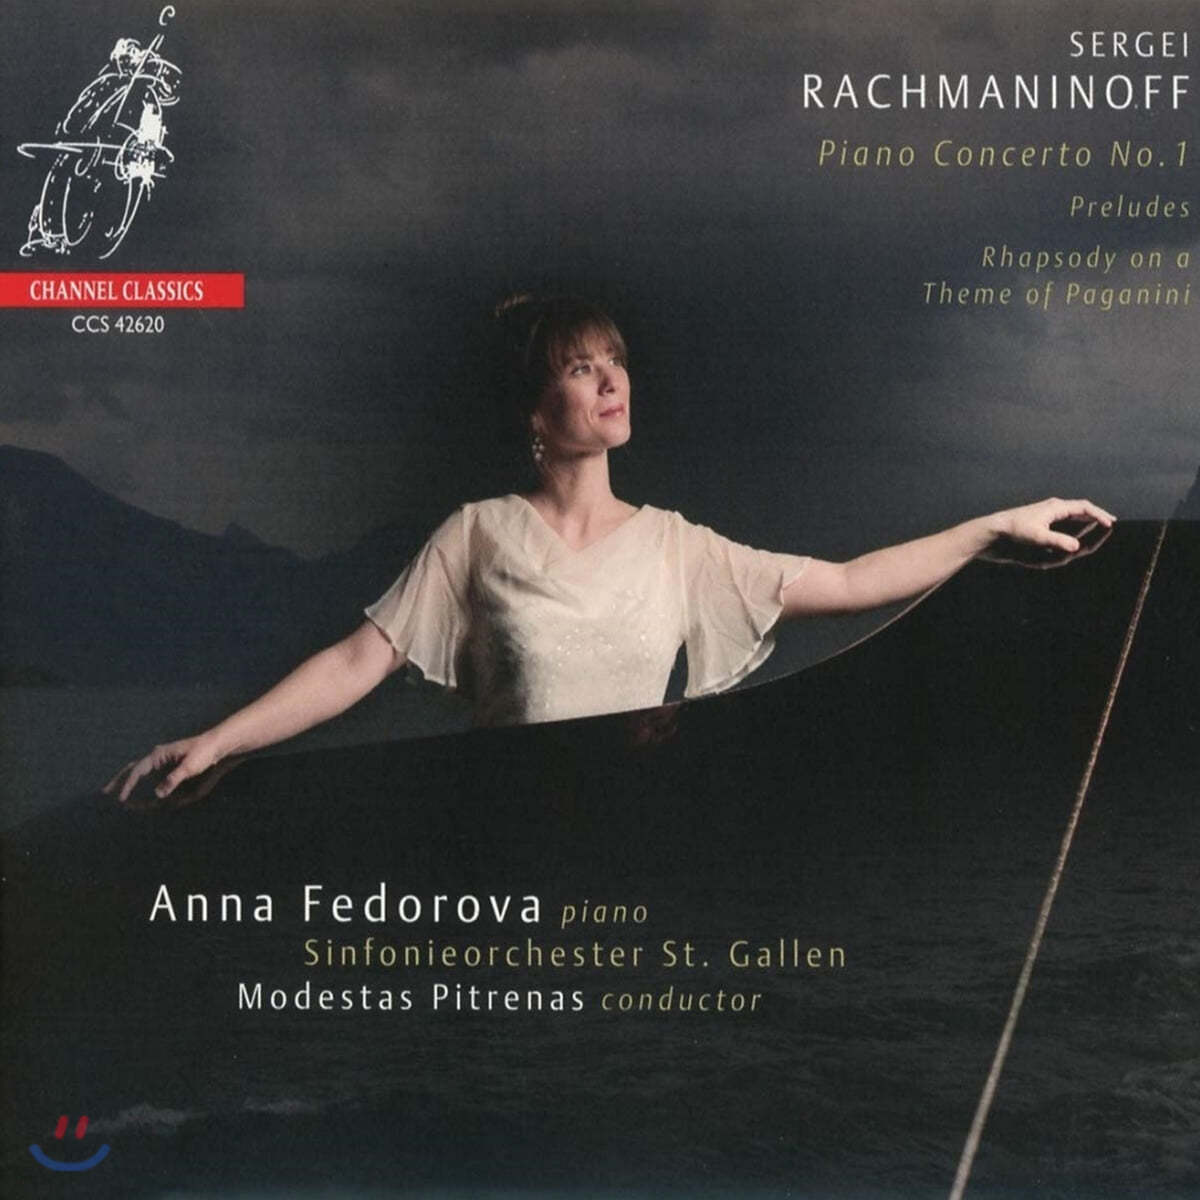 Anna Fedorova 라흐마니노프: 피아노 협주곡 1번, 파가니니 주제에 의한 광시곡 - 안나 페도로바